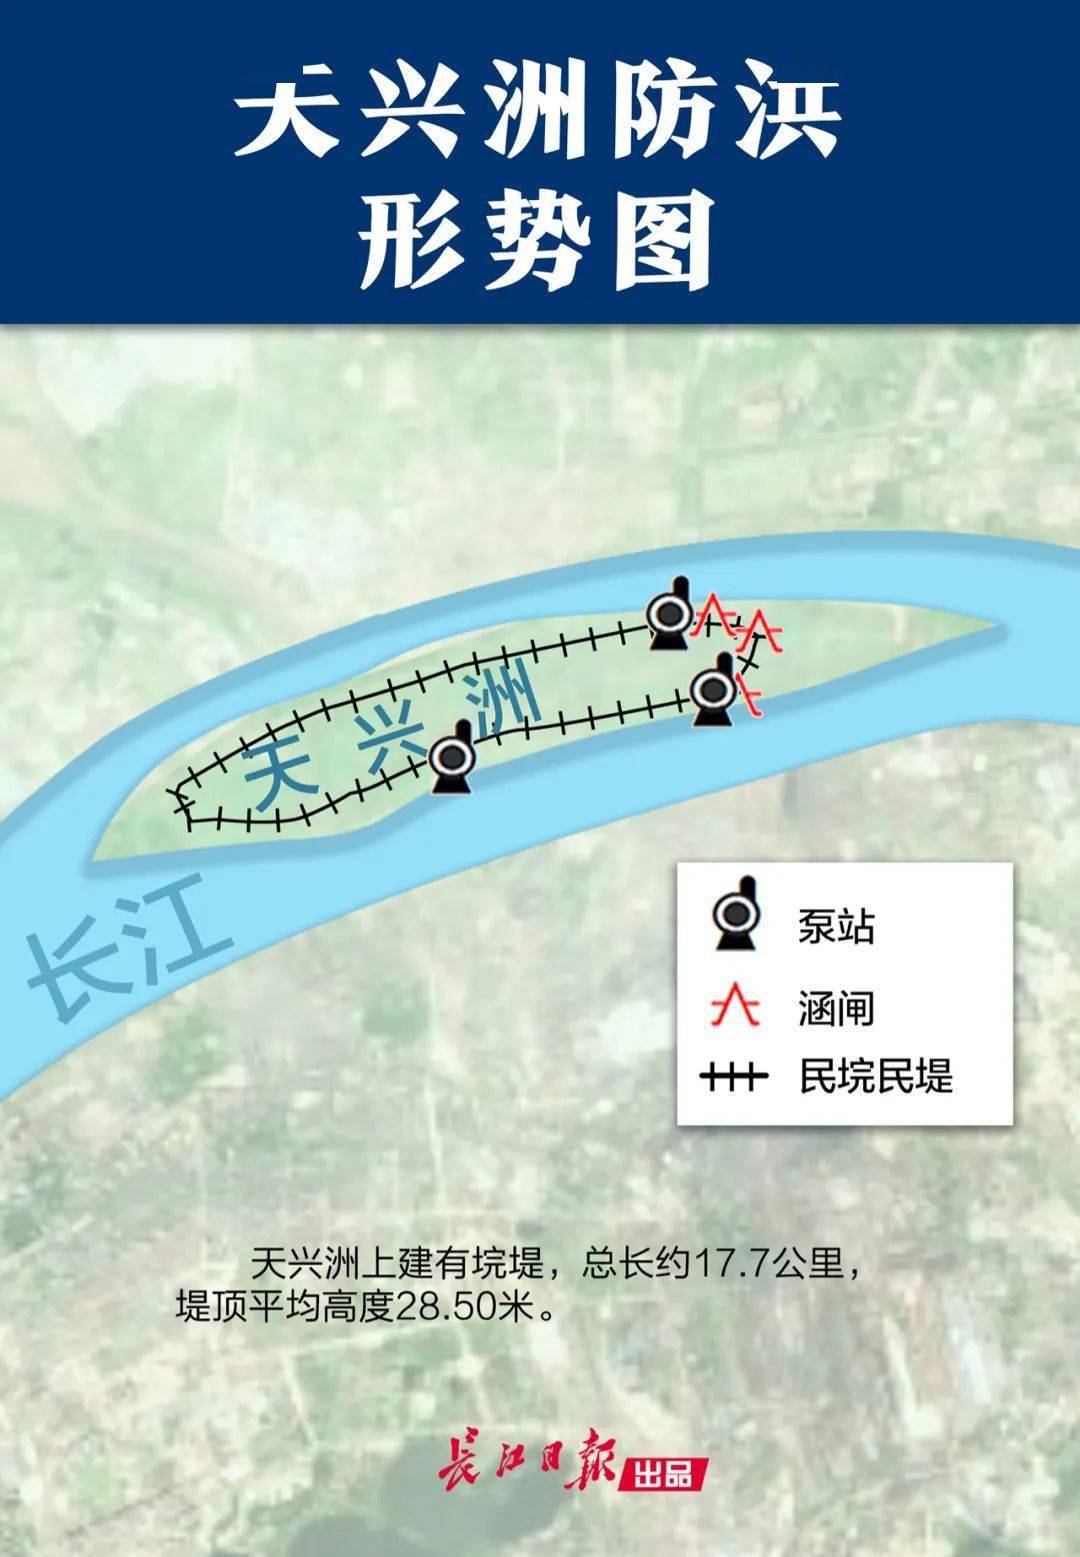 1998年后"平垸行洪,退田还湖"纳入长江综合防御体系.